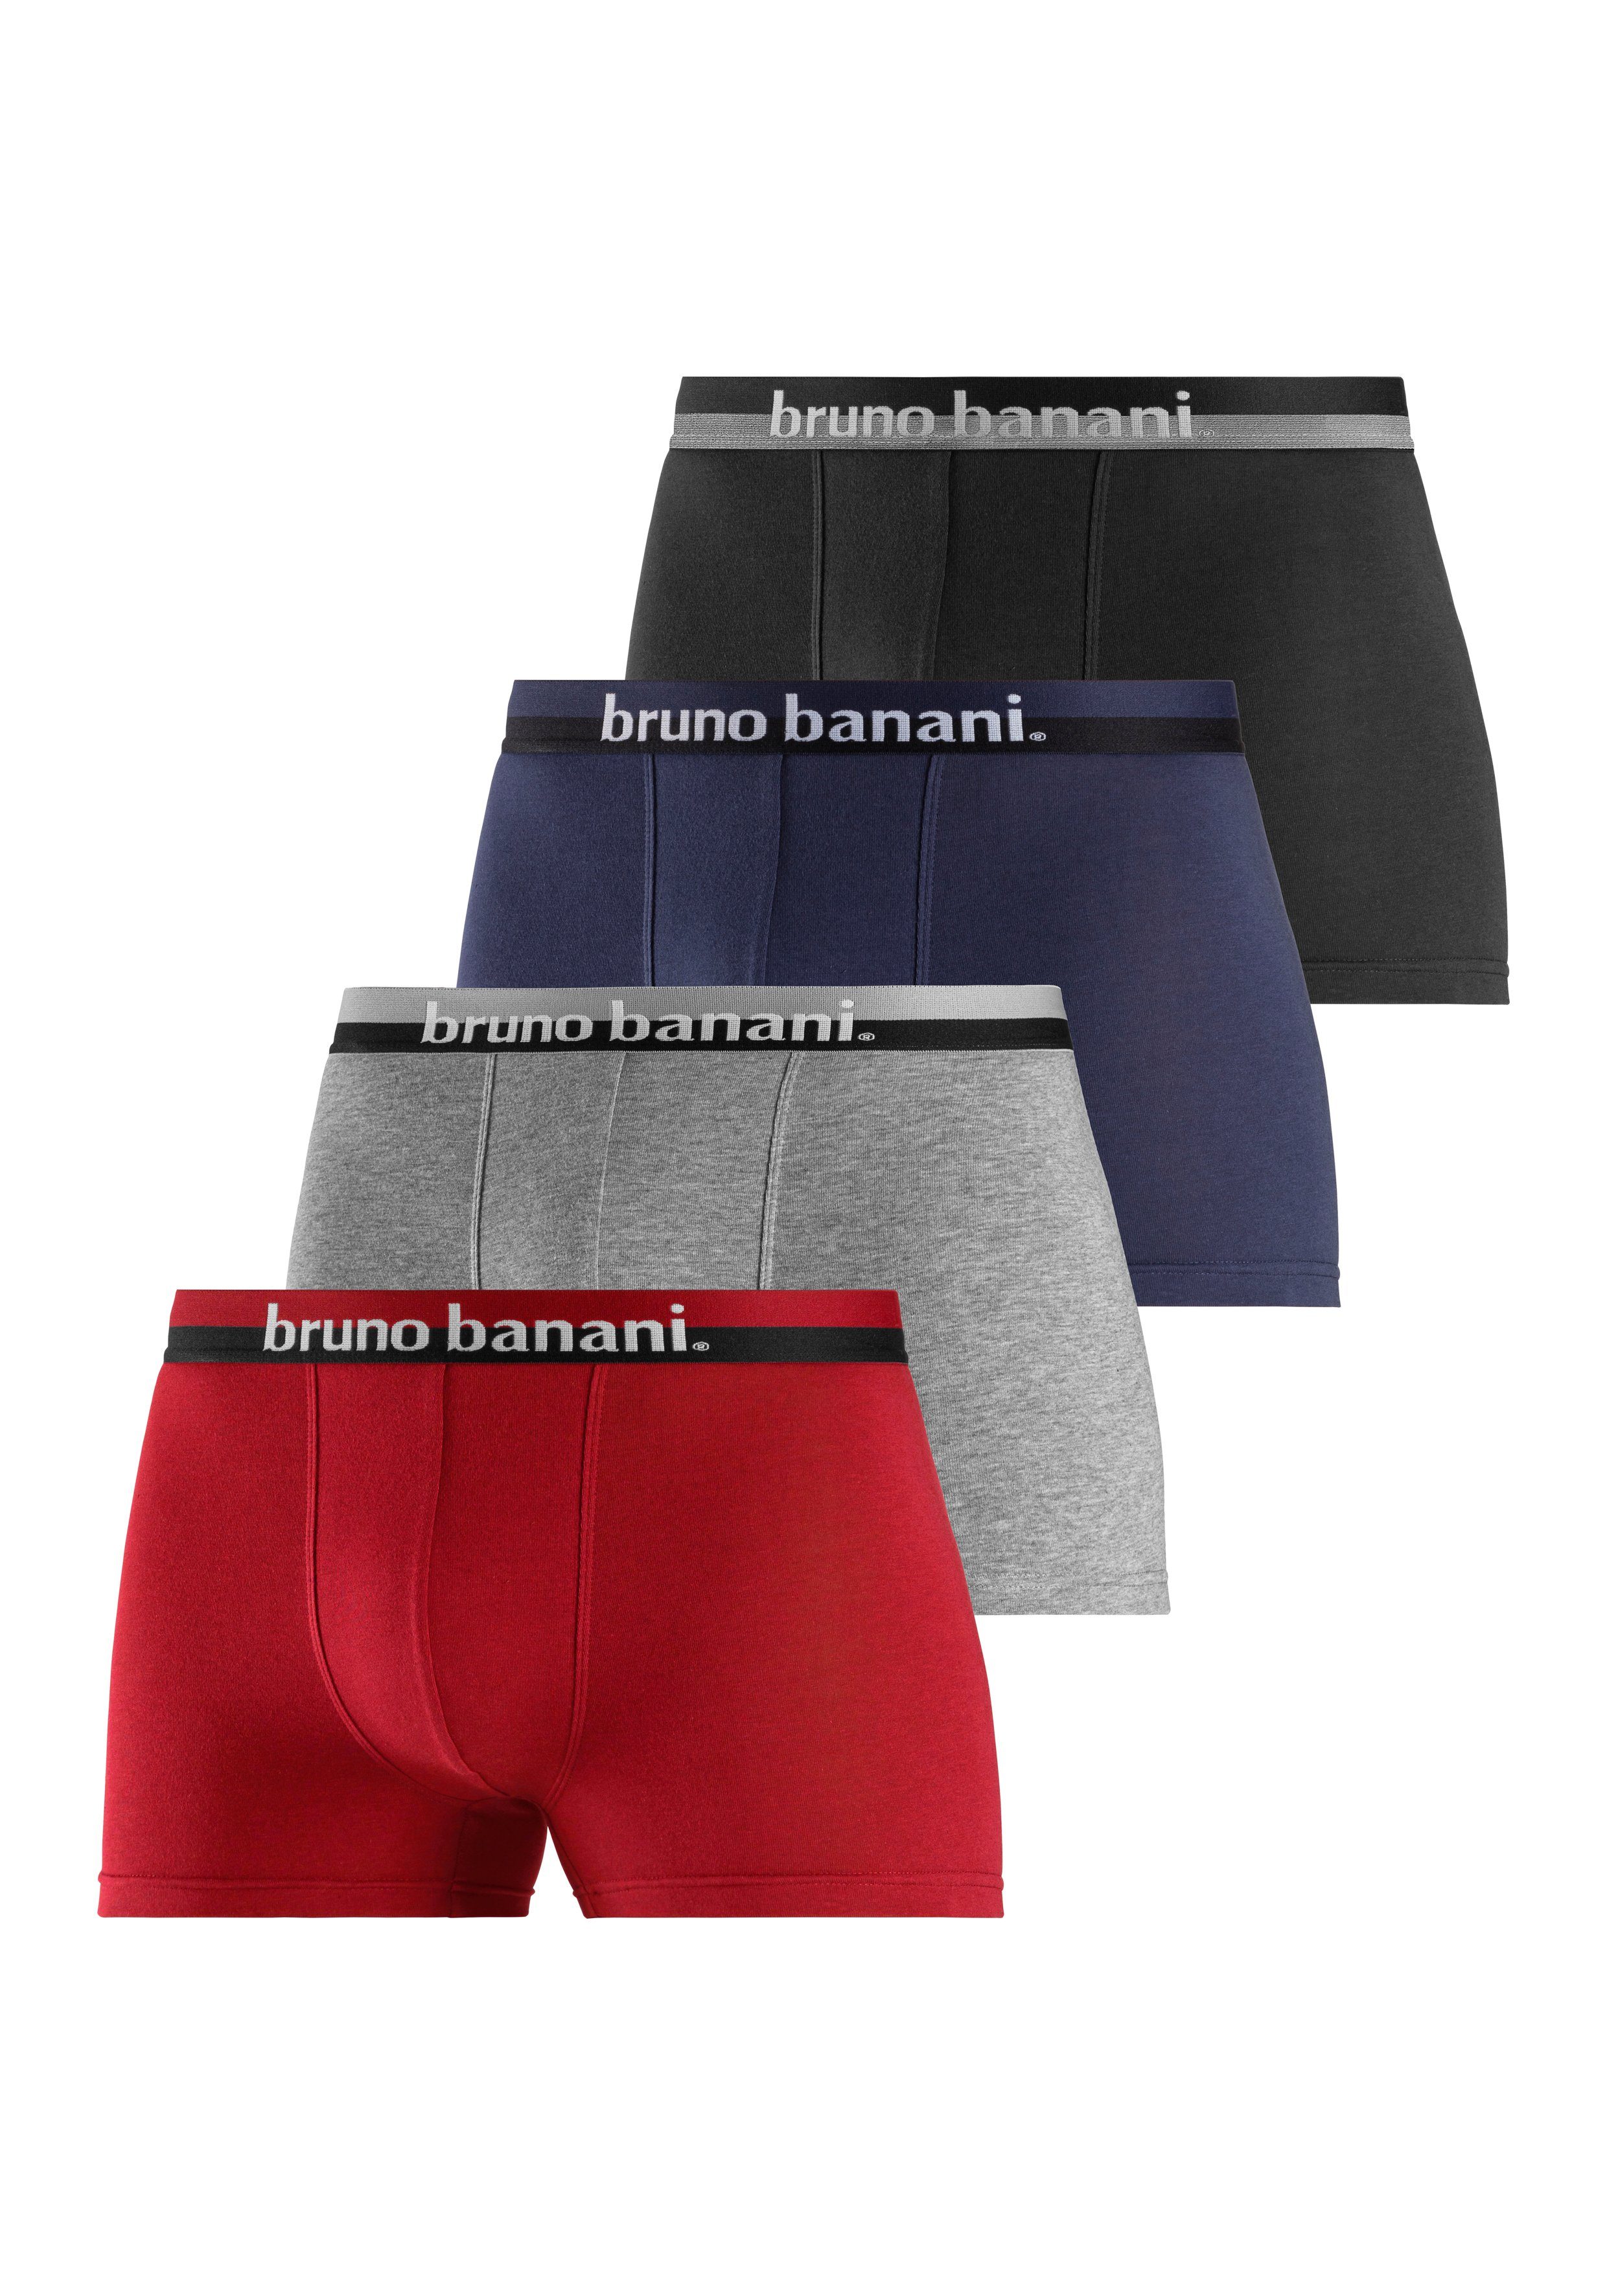 Bruno Banani Boxer (Packung, 4-St) mit erhabenem Logo-Druck auf dem Bund grau-meliert, bordeaux, rot, schwarz